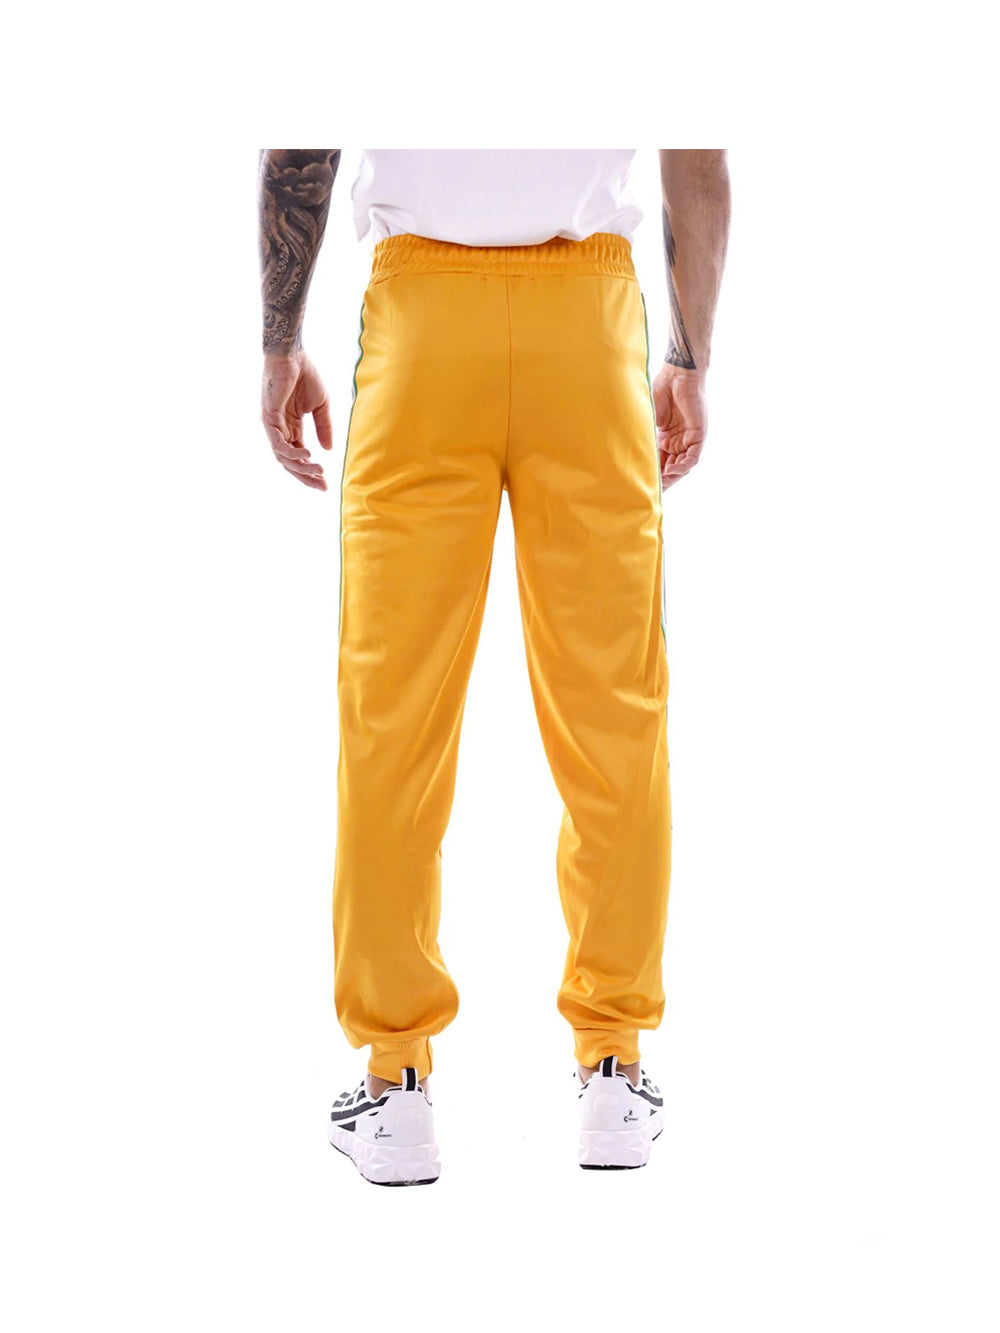 Pantalone Uomo Curry sportivo con bande laterali